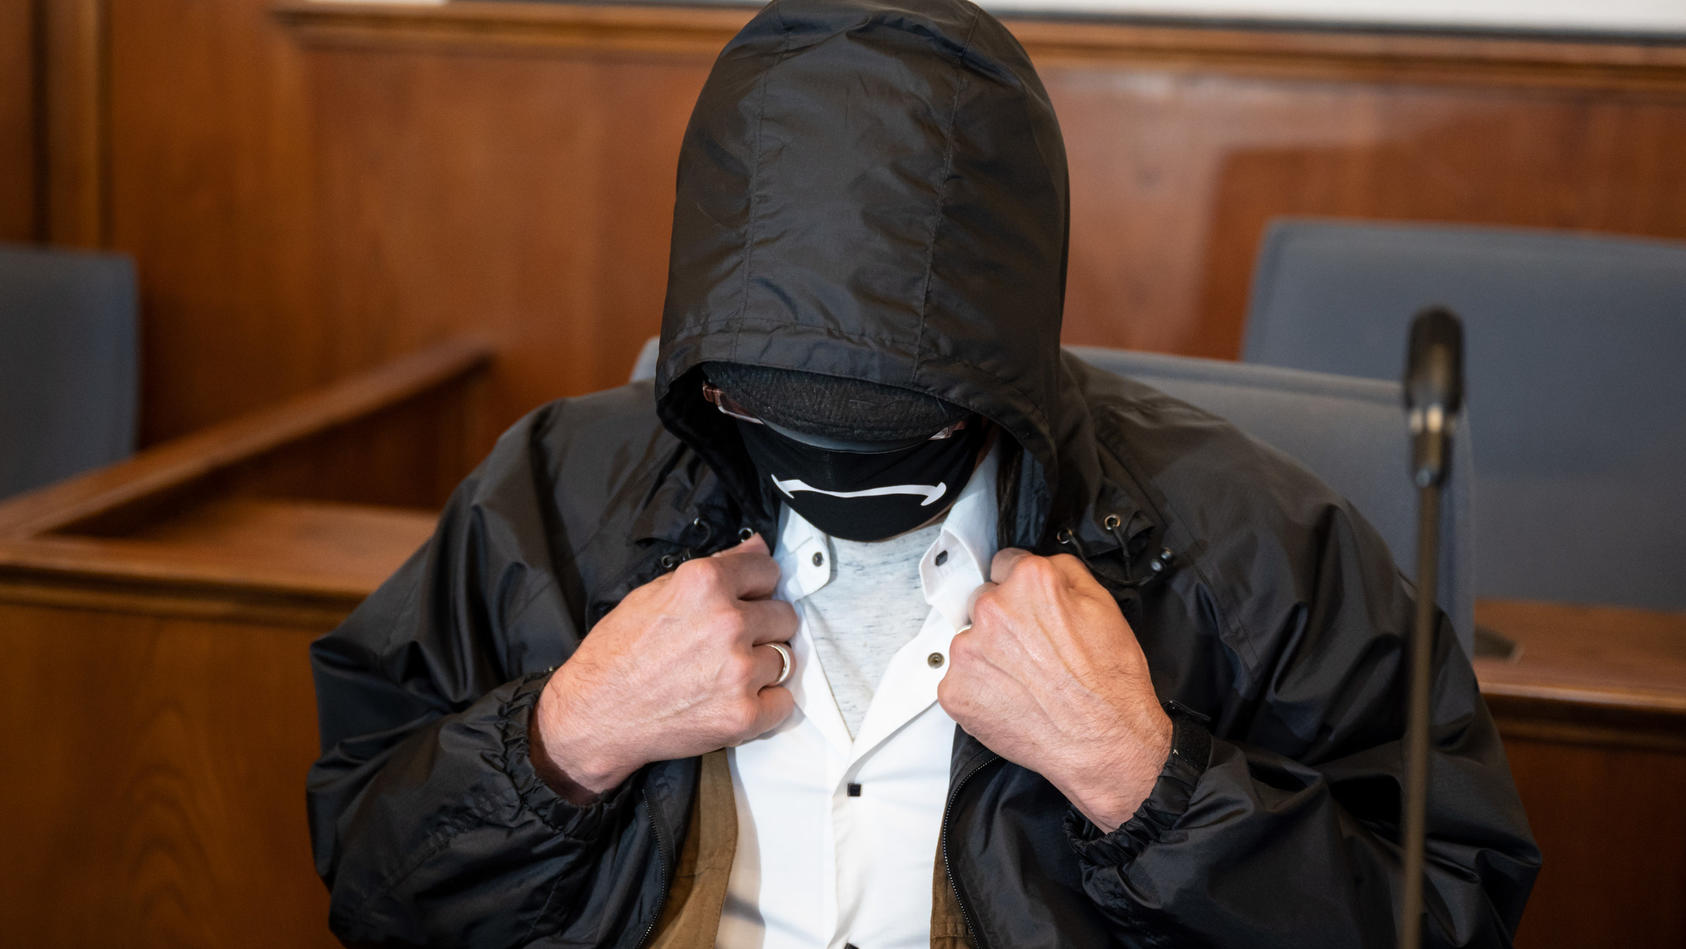 ARCHIV - 04.08.2020, Nordrhein-Westfalen, Dortmund: Der Angeklagte verbirgt auf der Anklagebank im Landgericht sein Gesicht hinter einer Gesichtsmaske, einer Brille und unter einer Kapuze. Der Mann wurde inzwischen rechtskräftig verurteilt, die damal